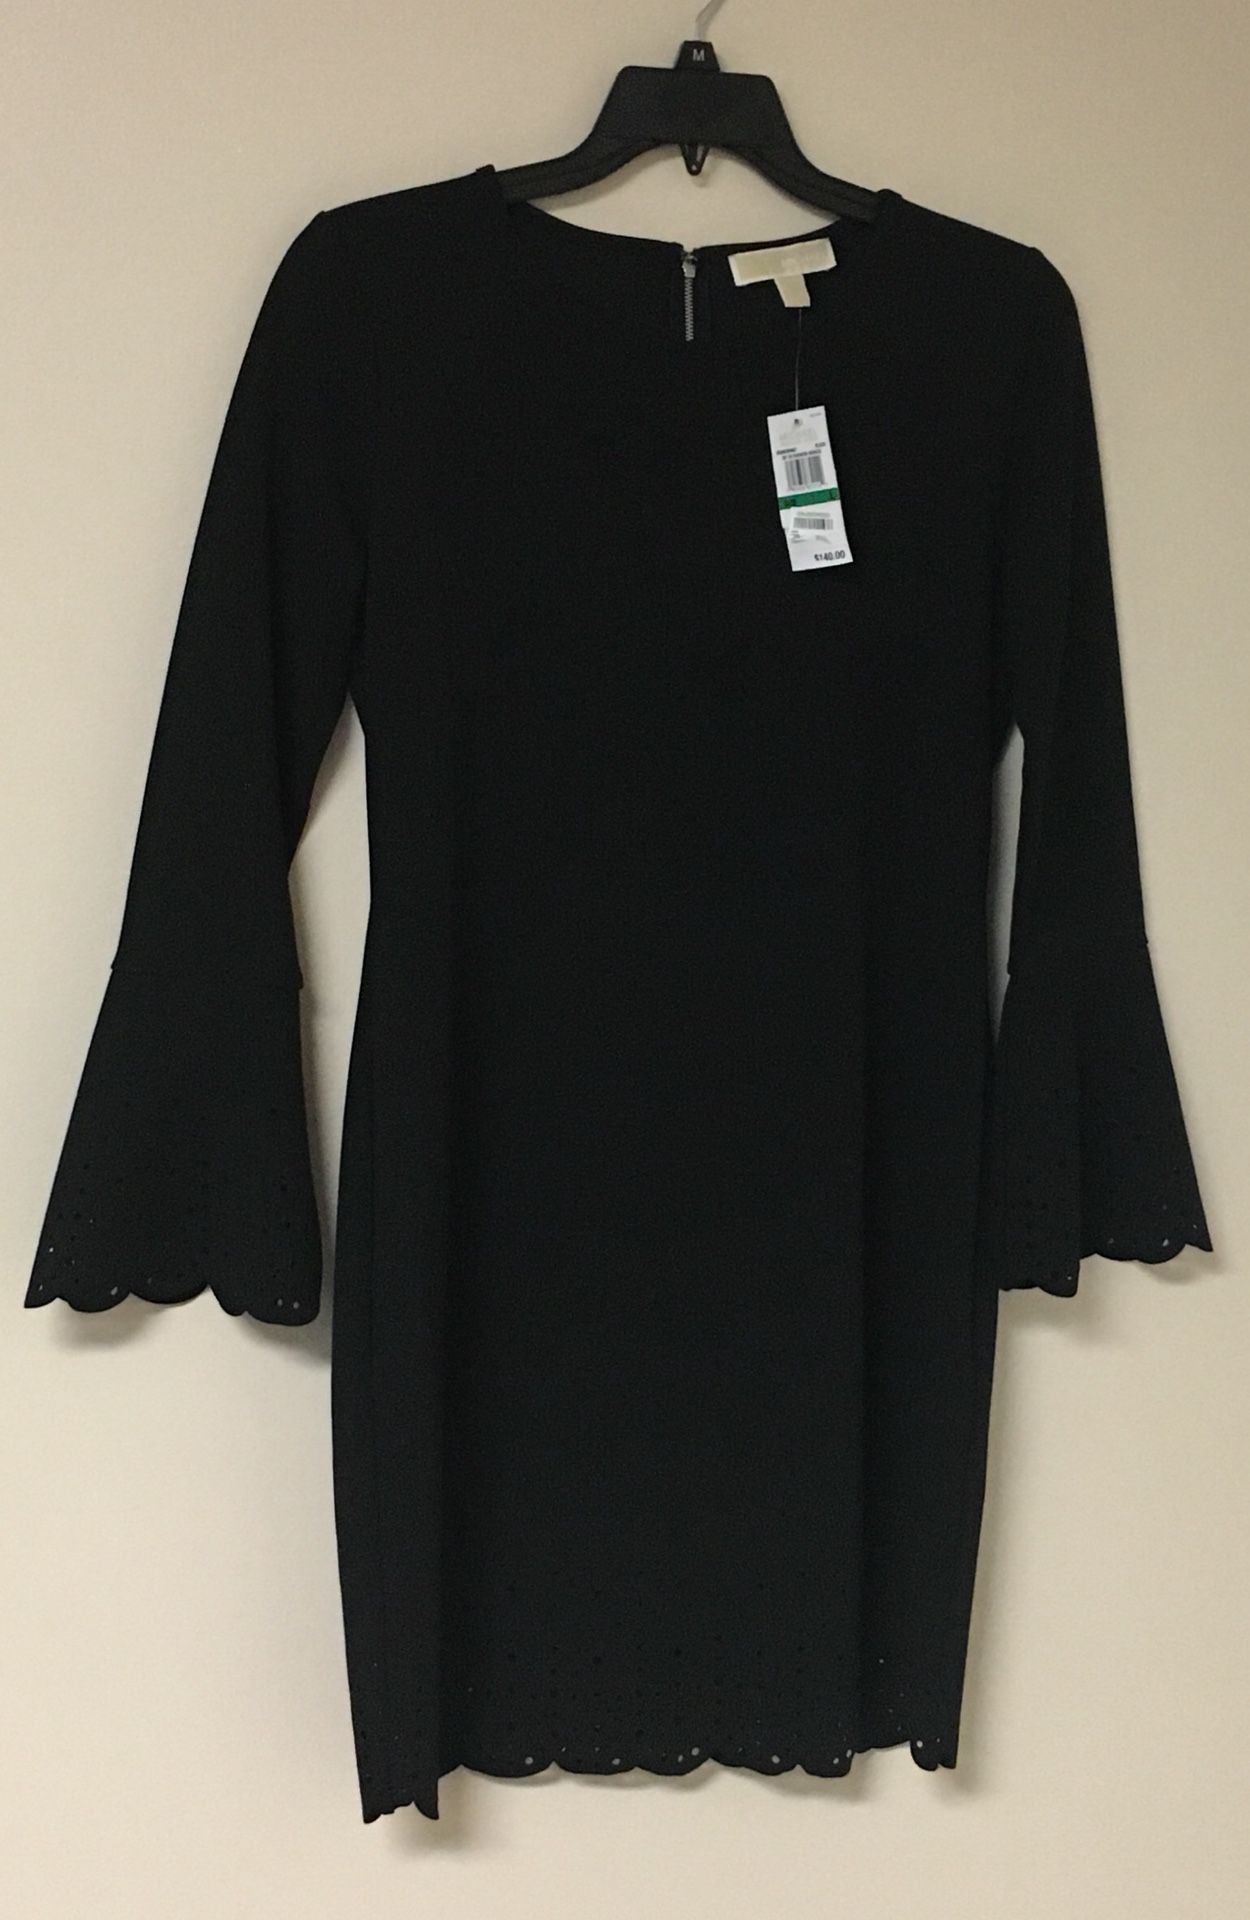 Michael Kors Black Dress - Size Large